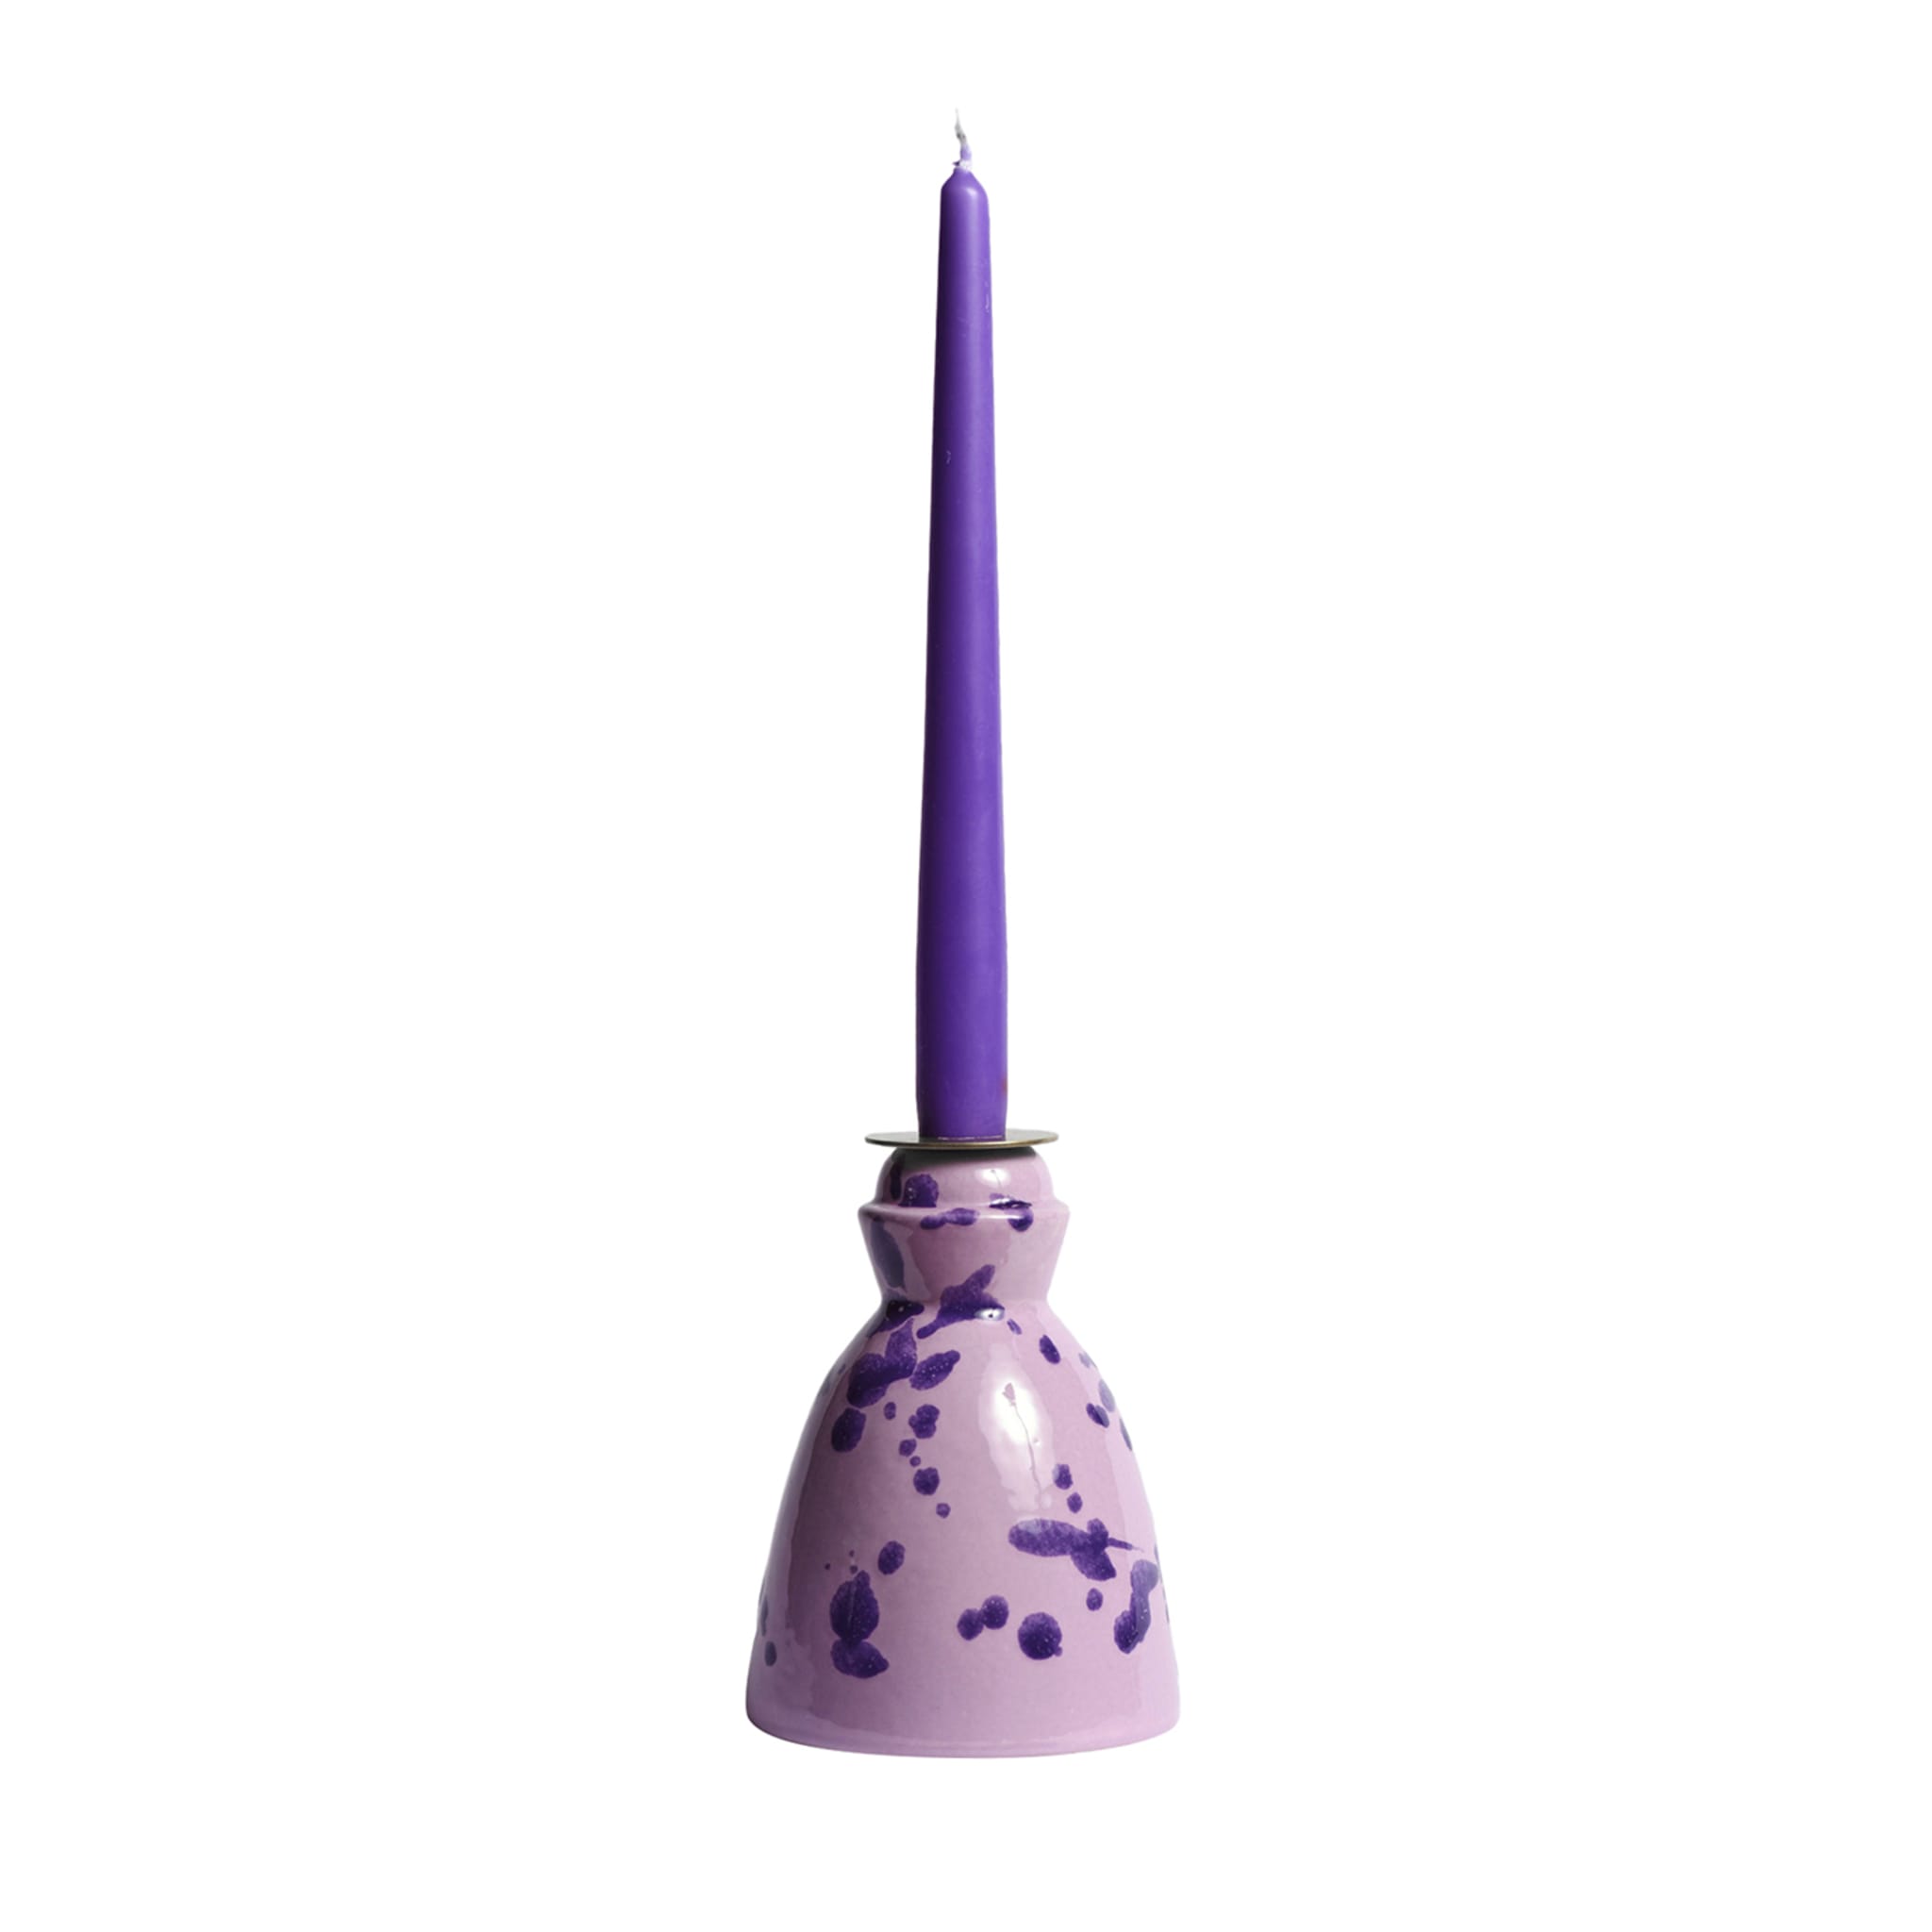 Candelabro de cerámica lila con 4 velas de cera de abeja - Vista principal